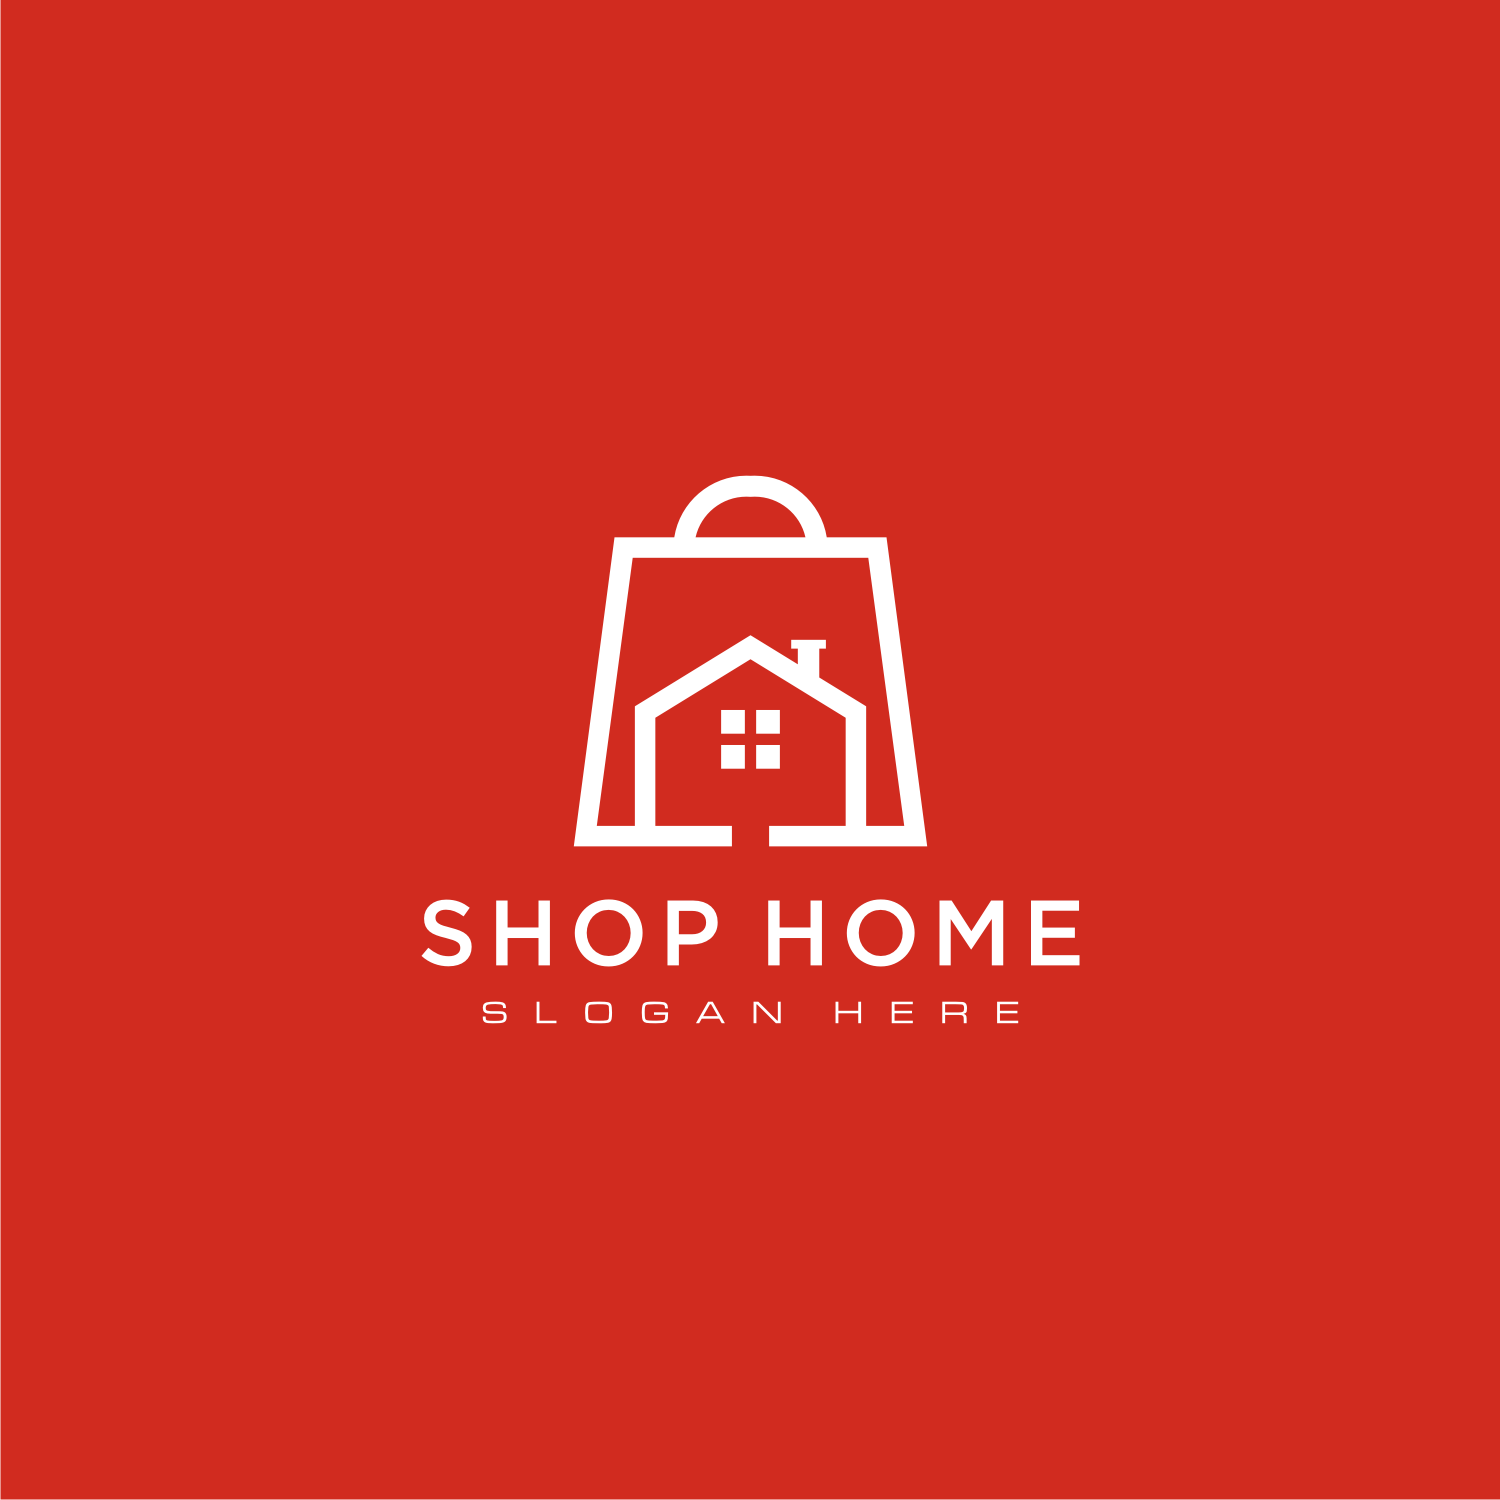 Home Shop Logo Vector Design Preview Image.